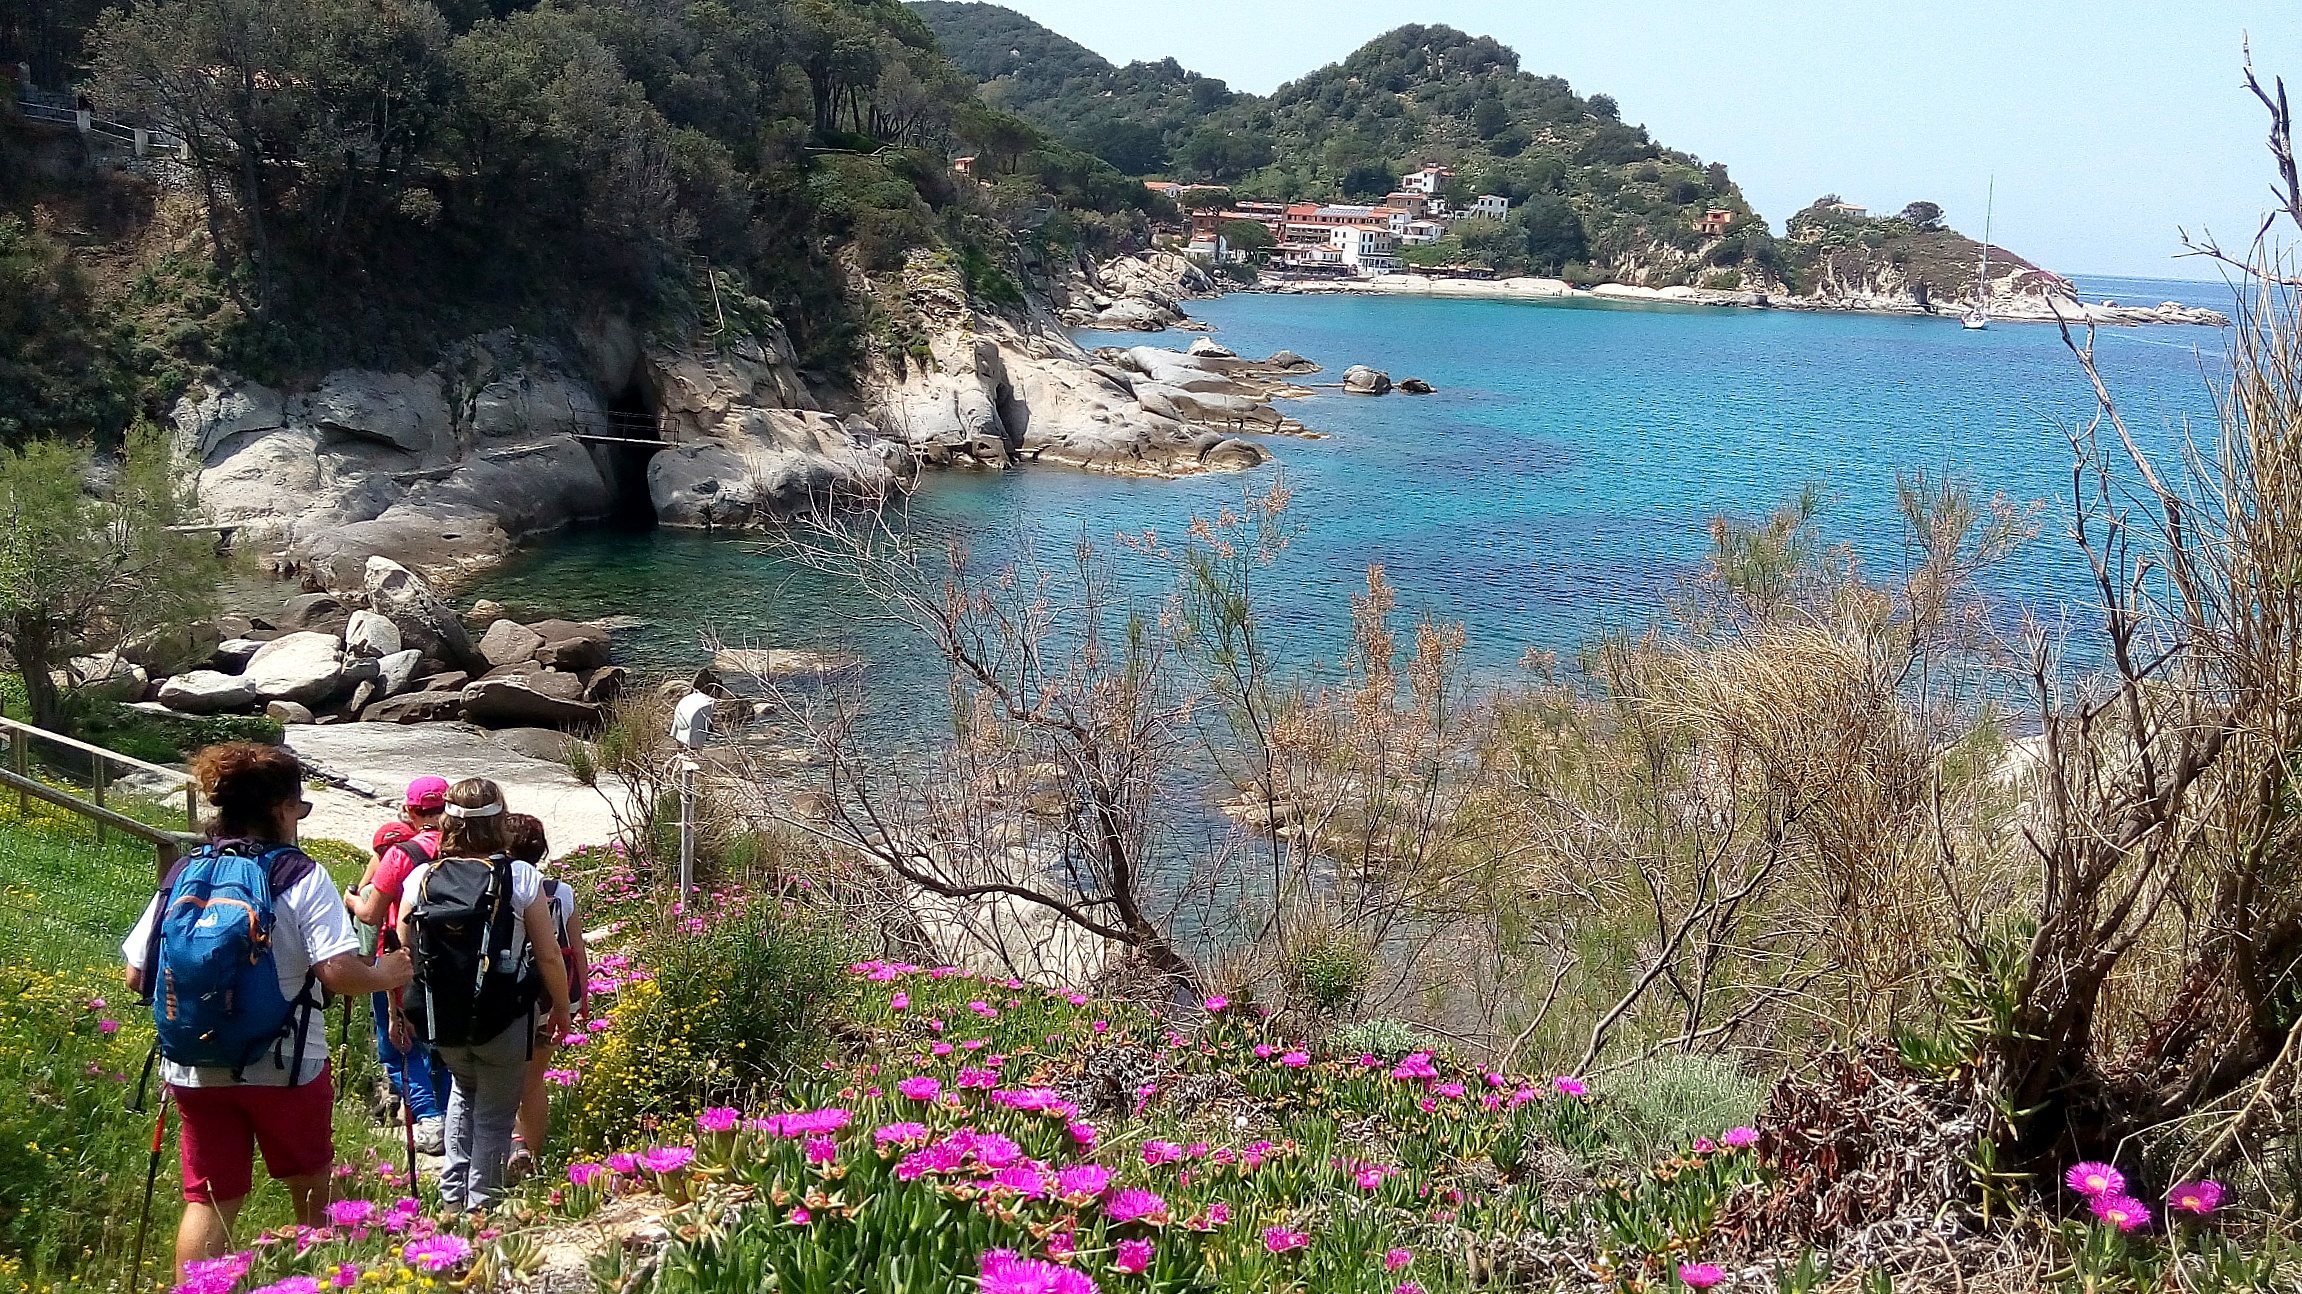 Trek grandioso all'Isola d'Elba; la gemma del Tirreno tutta in fiore!!